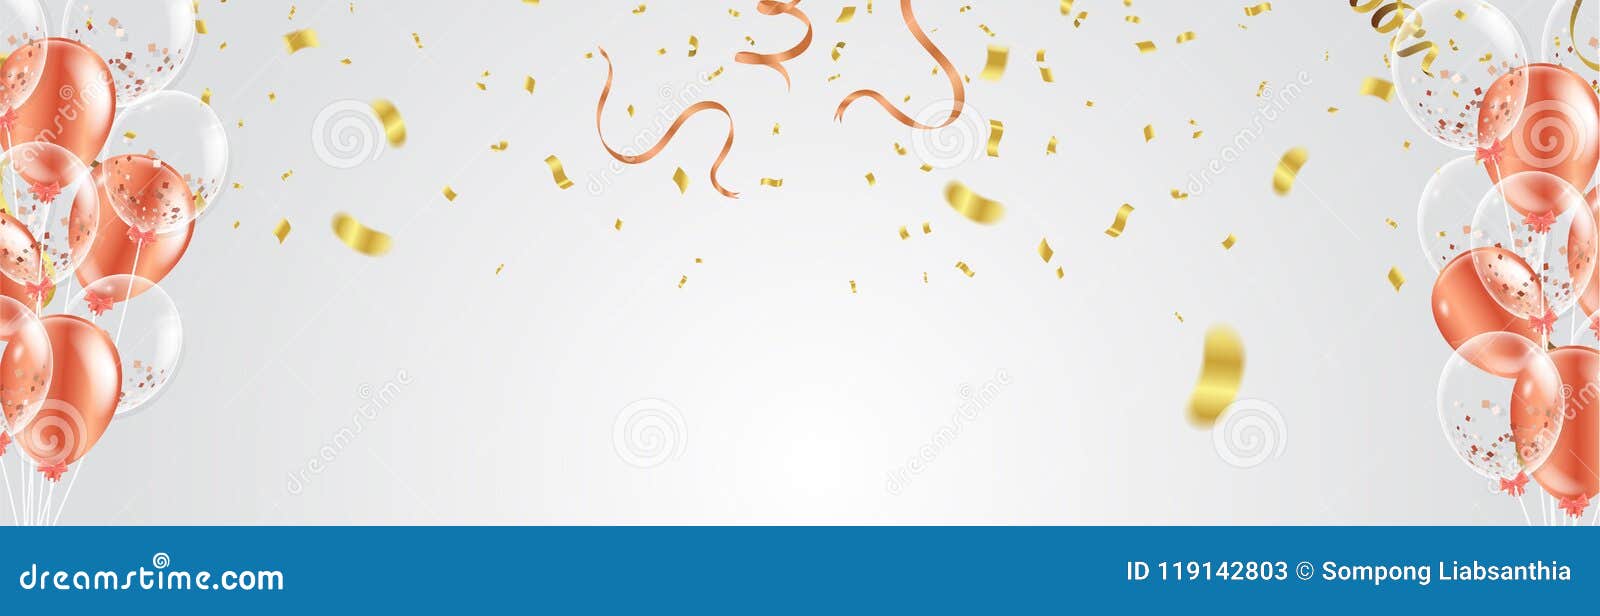 Tarjeta De Cumpleaños Con Globos De Colores Y Confeti Sobre Fondo Blanco  Ilustraciones svg, vectoriales, clip art vectorizado libre de derechos.  Image 52558185